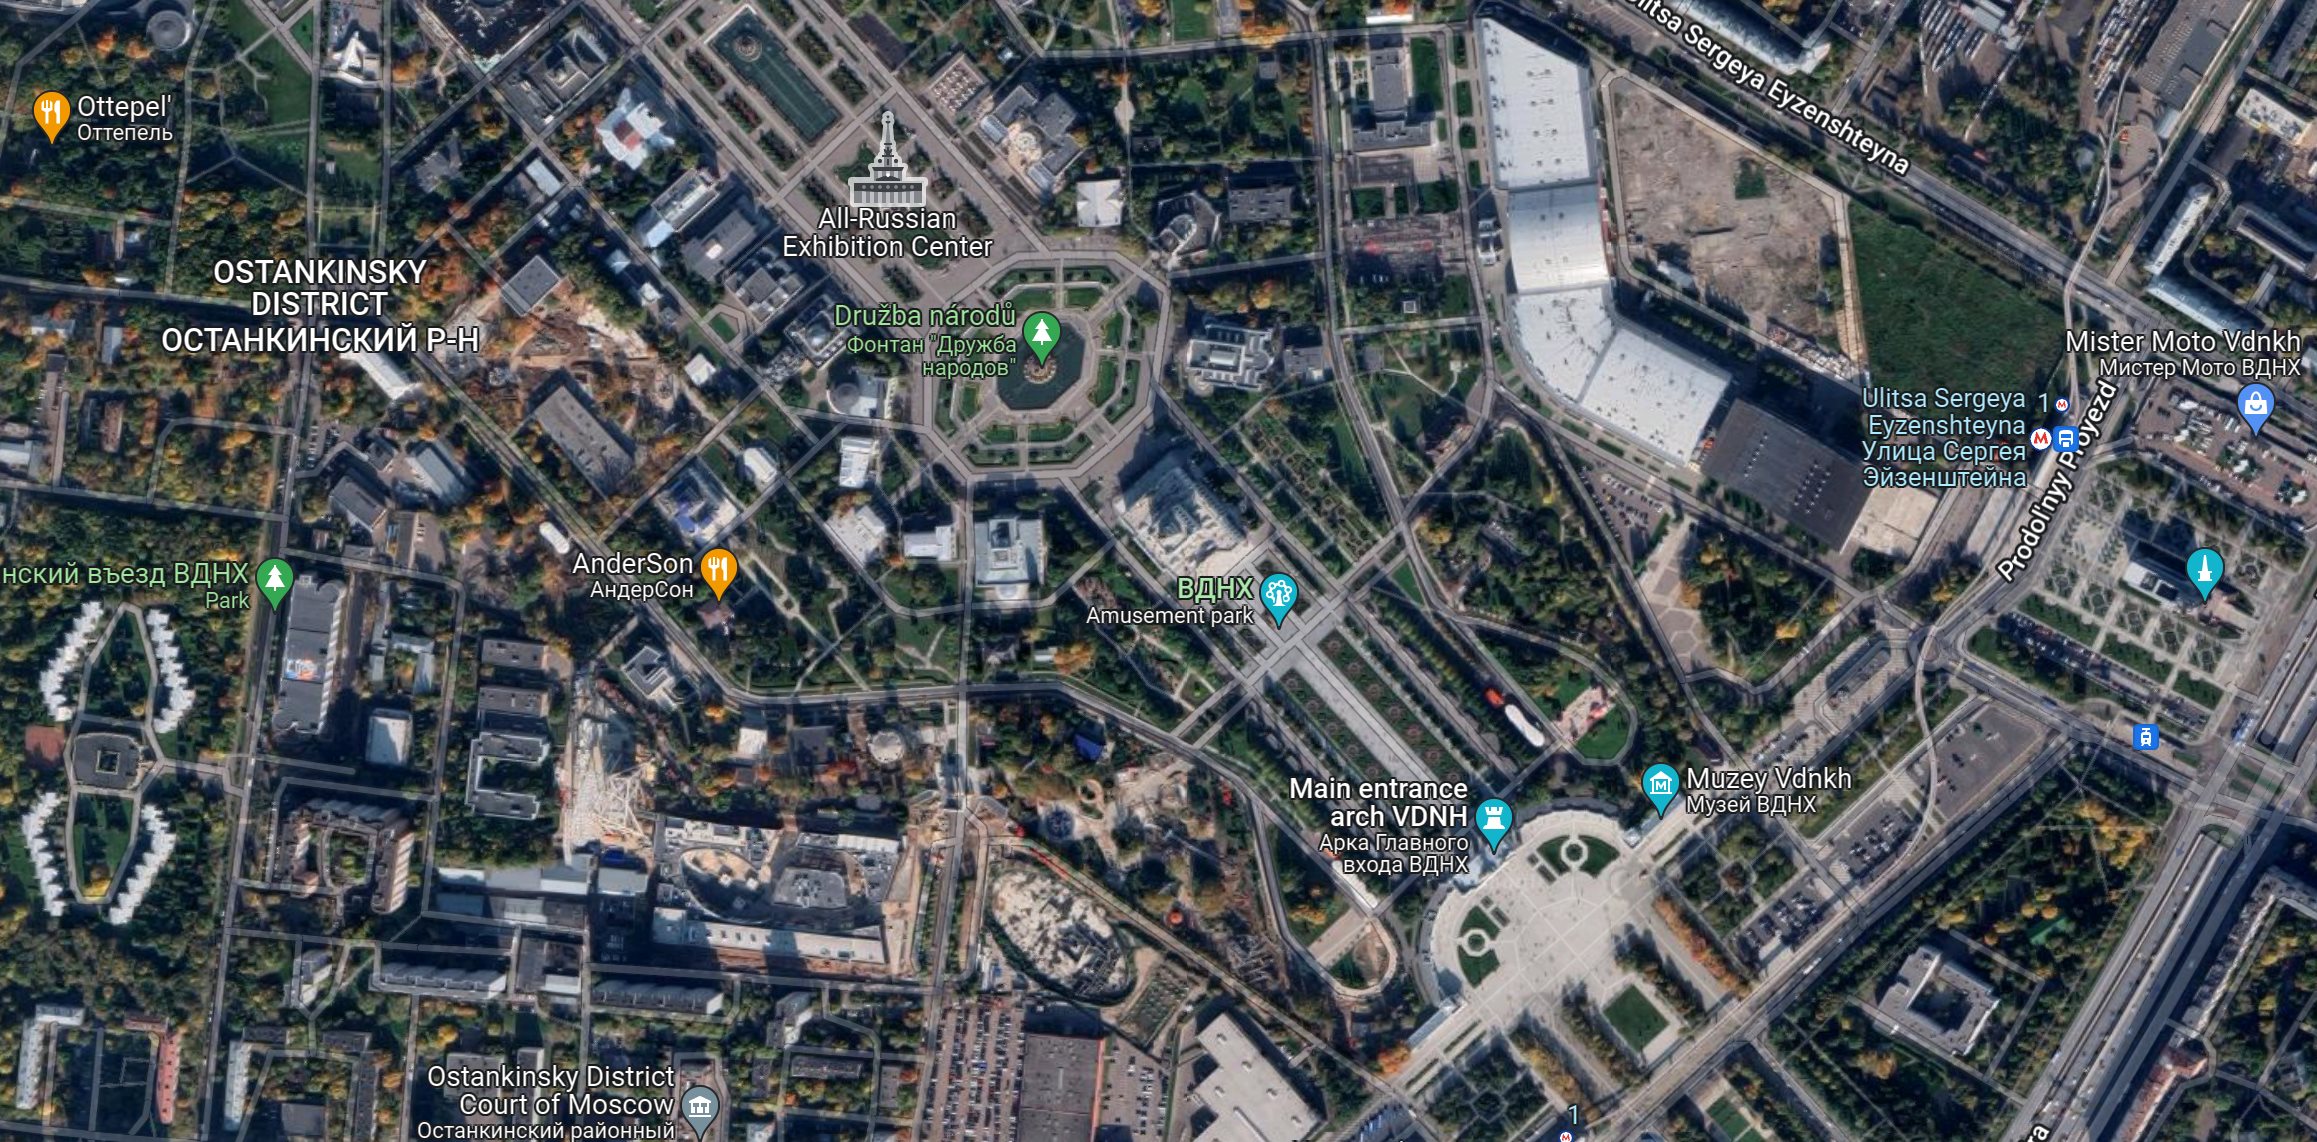 Αλήθεια ή ψέμα; Τα Google Maps αποκάλυψαν τις θέσεις του ρωσικού στρατού